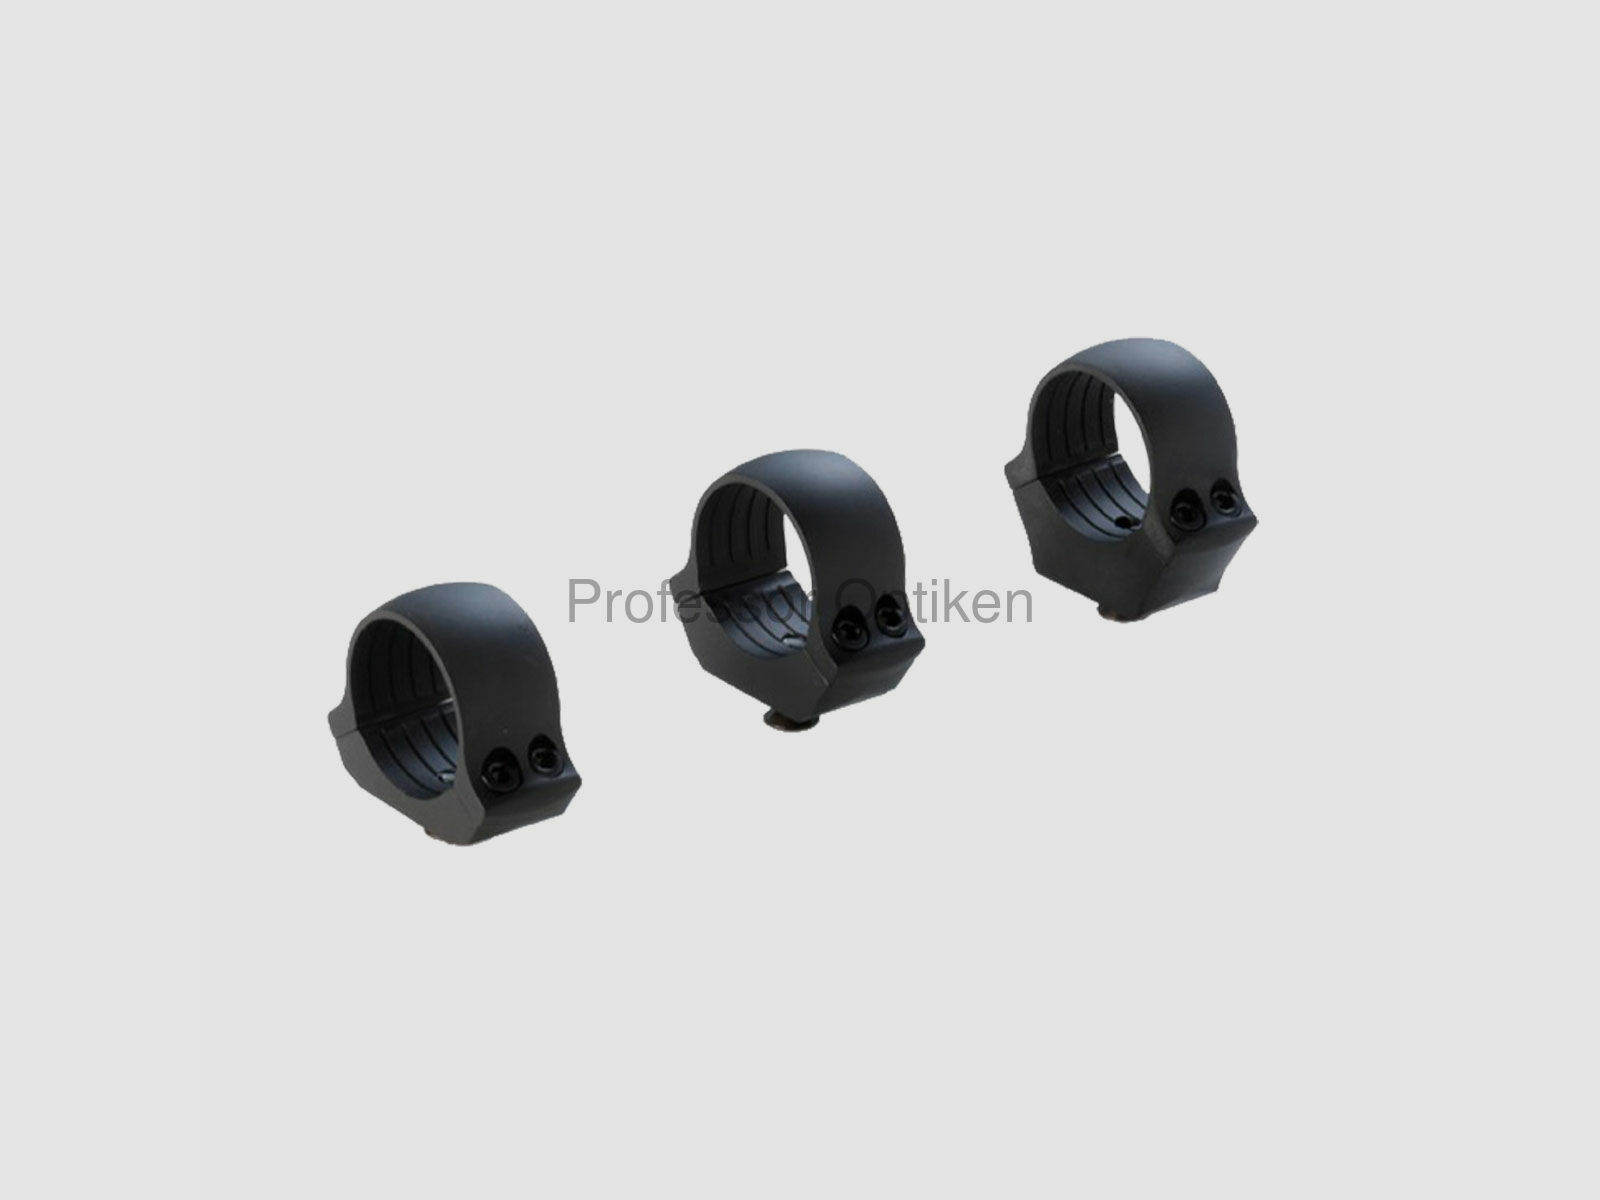 Professor Optiken by DENTLER	 Montageschiene BASIS (DURAL) - 30er Ring mit Ringen - verschiedene Bauhöhen